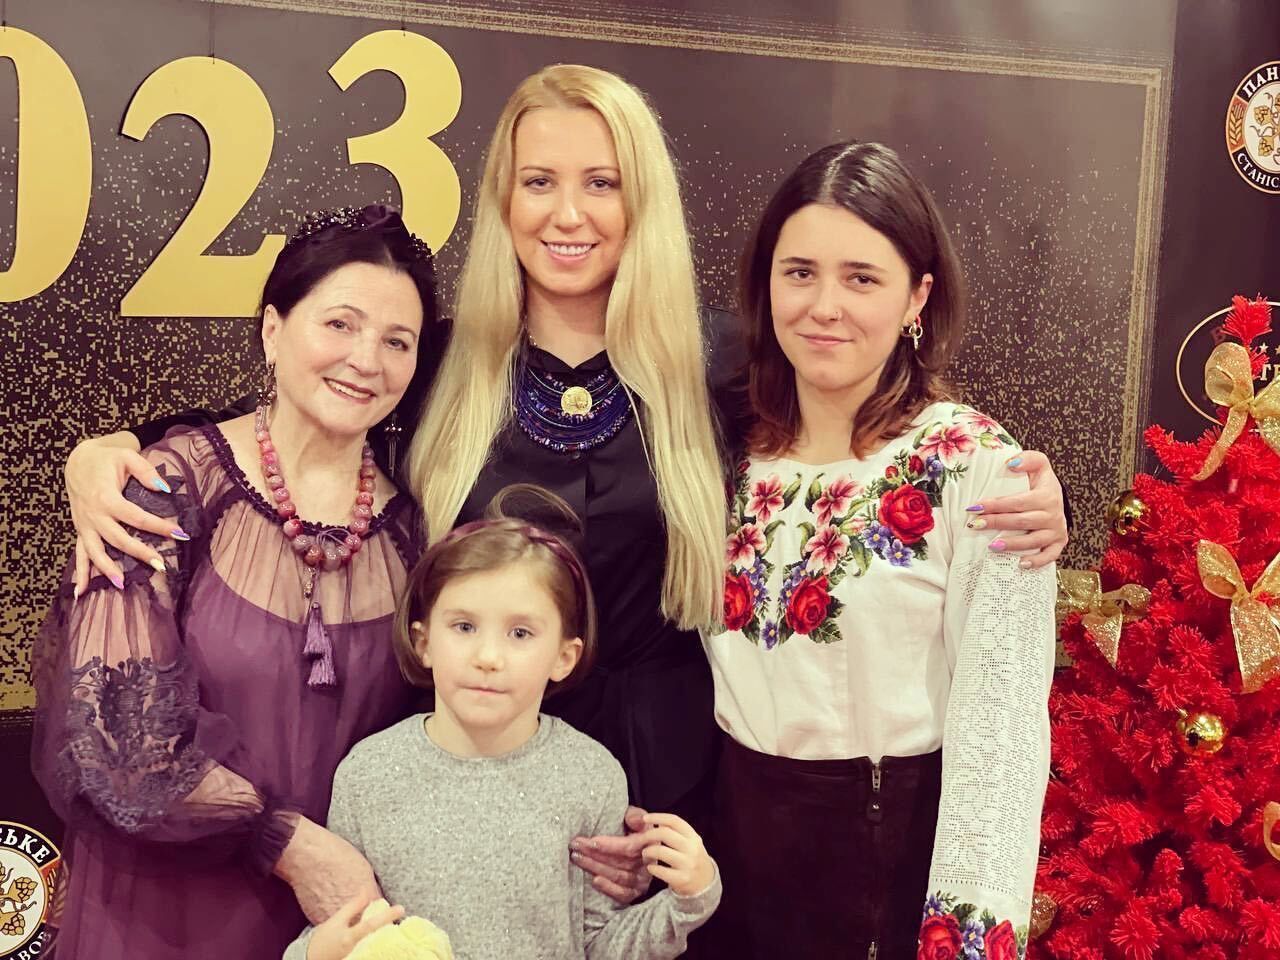 Матвиенко, Роговцева, Полякова и другие знаменитости, доказавшие прочную связь между тремя поколениями женщин. Фото